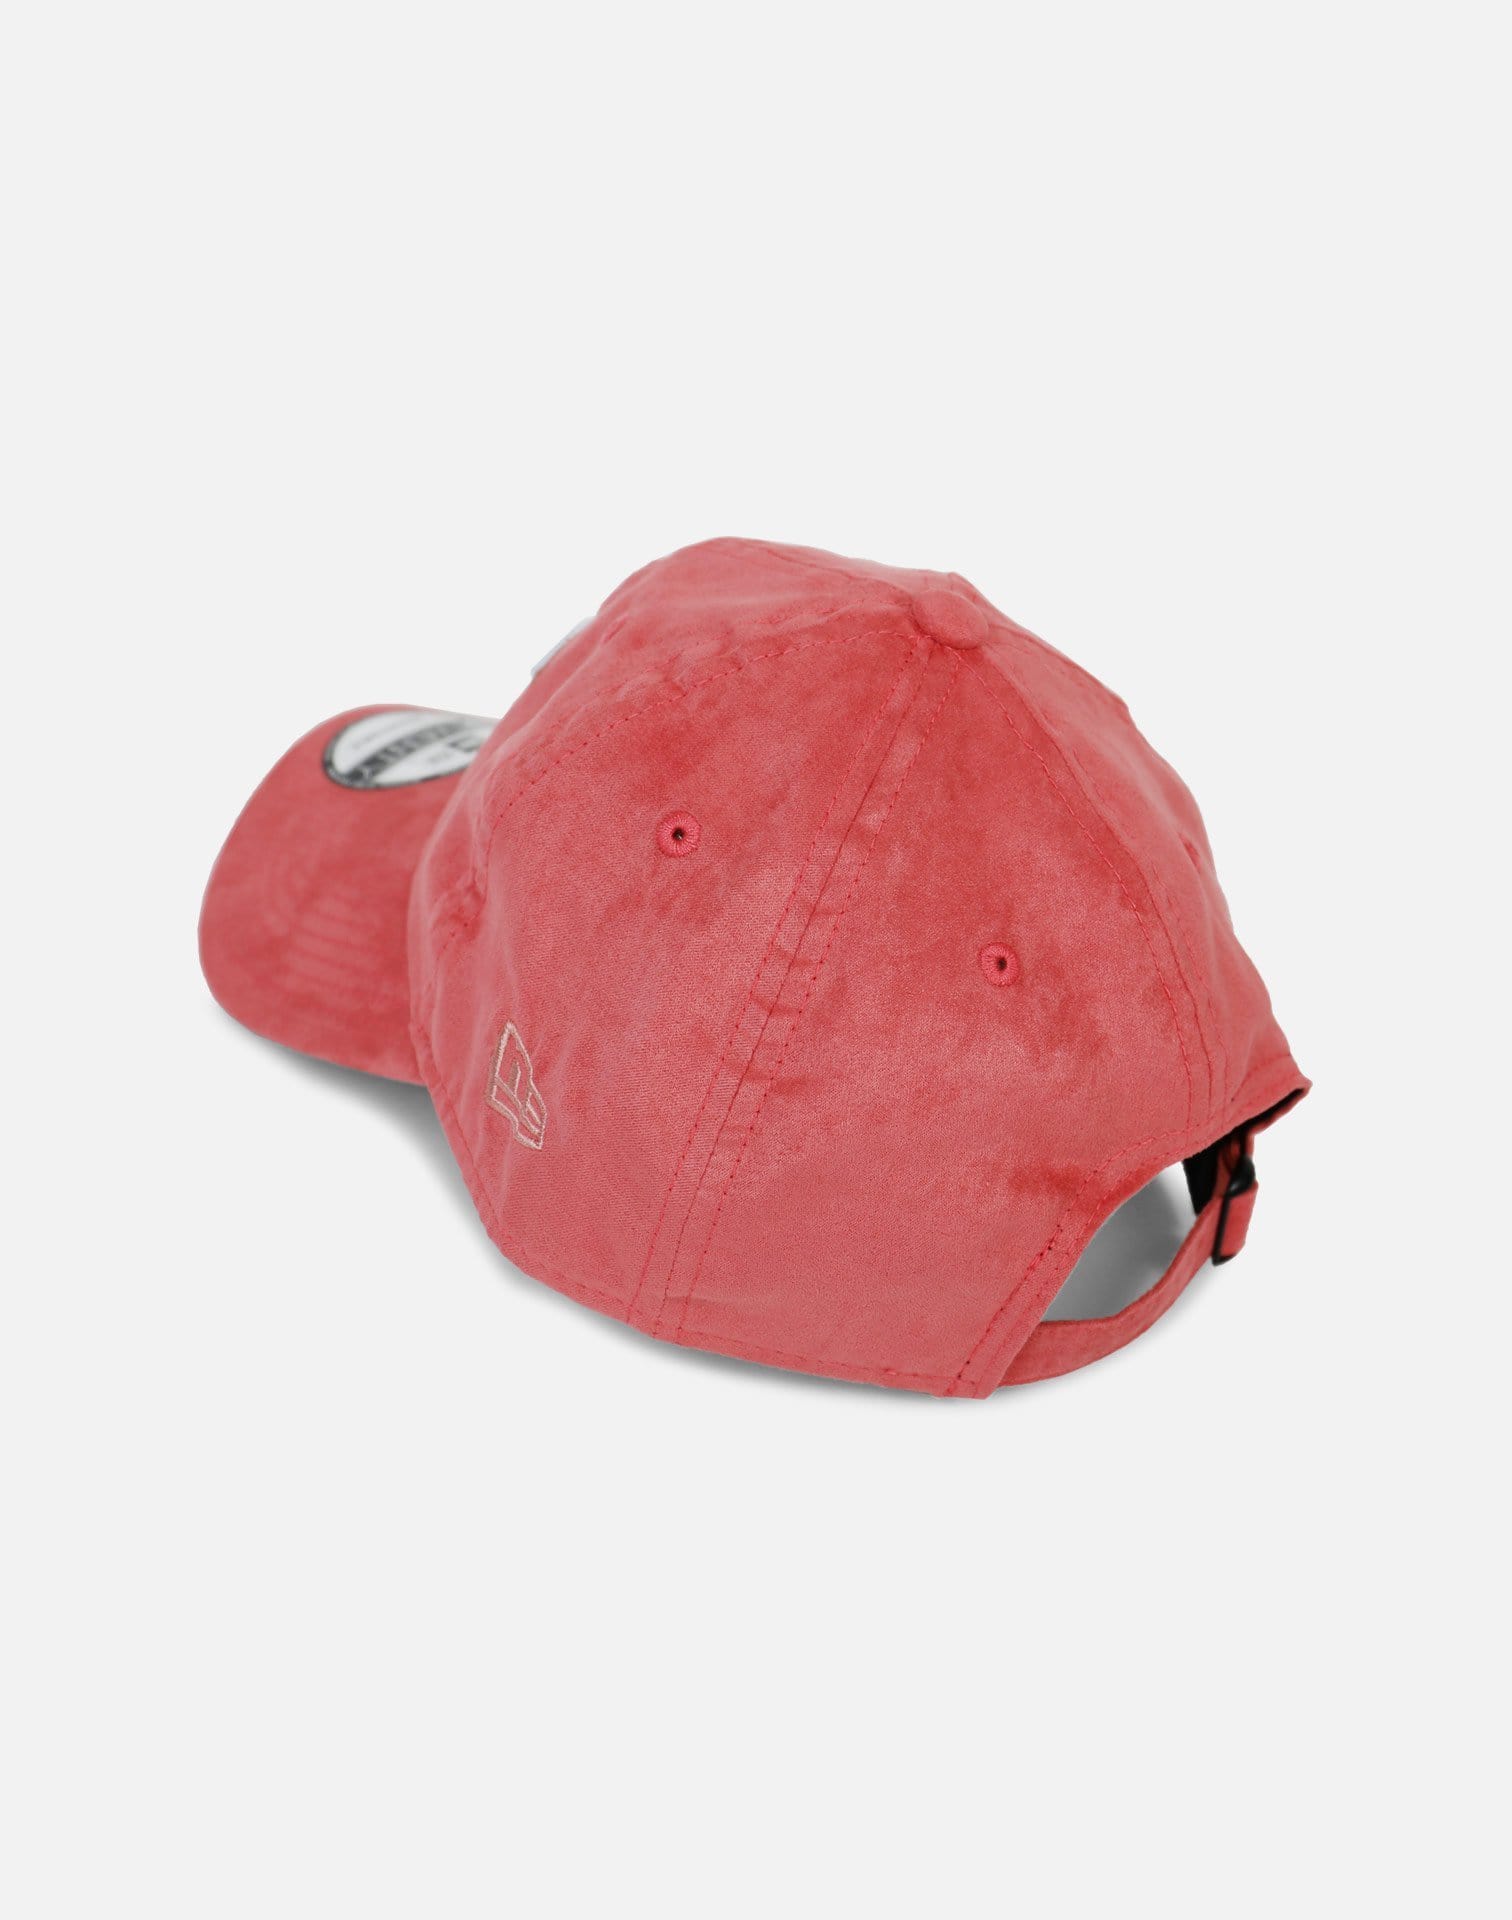 New Era Cleveland Cavaliers Stone Wash Suede Dad Hat (Peach)